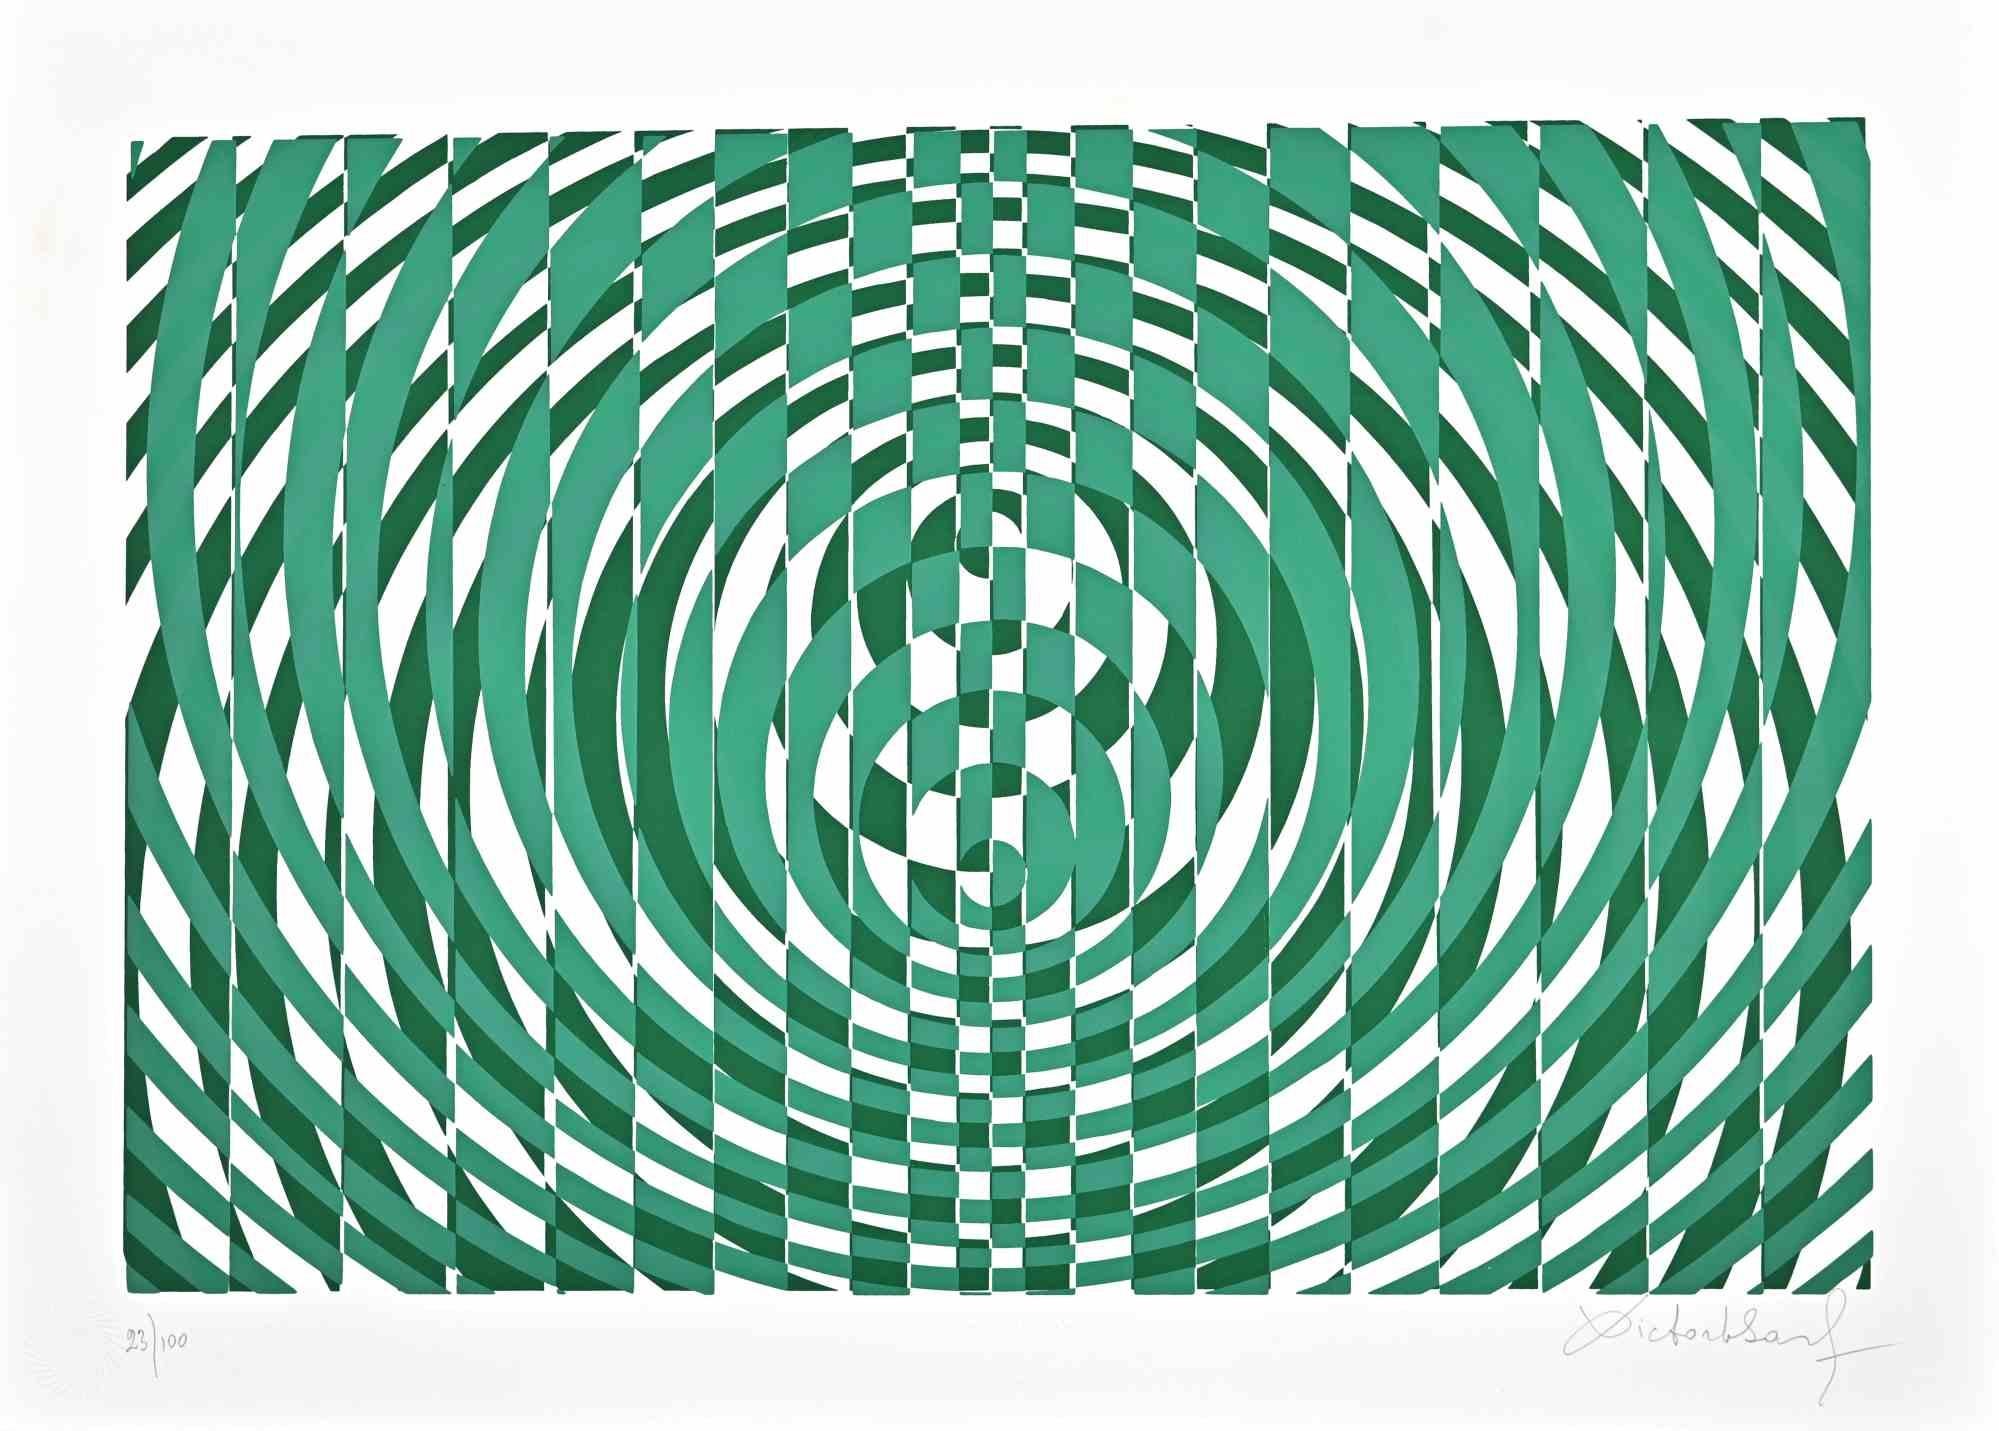 Composition verte abstraite est une sérigraphie sur papier réalisée par Victor Debach dans les années 1970.

Édition limitée à 100 exemplaires numérotés et signés par l'artiste au crayon dans la marge inférieure.

Très bon état sur un carton blanc.